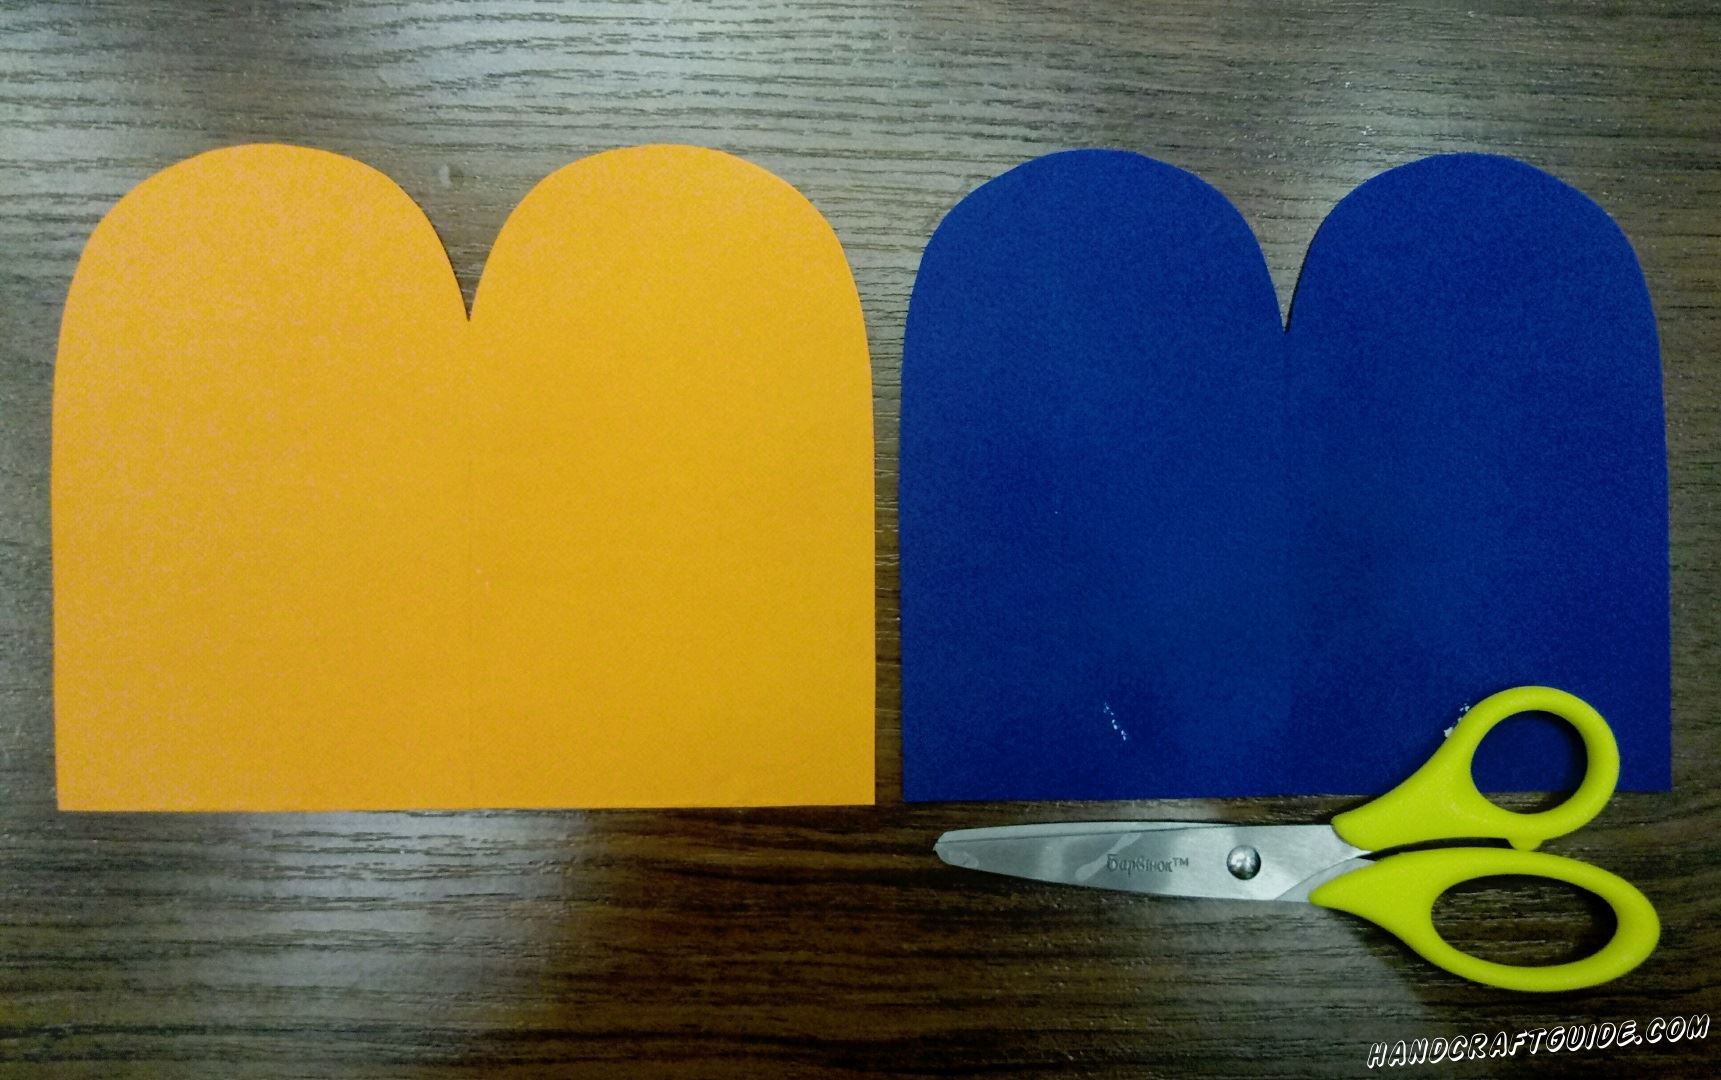 Берем в руки оранжевую и синюю бумагу. Вырезаем по одному одинаковому прямоугольнику каждого цвета. Затем прикладываем два цвета друг к другу и рисуем два бугорка с одной стороны. Обрезаем лишнее и у нас выходит две одинаковые фигурки разного цвета.